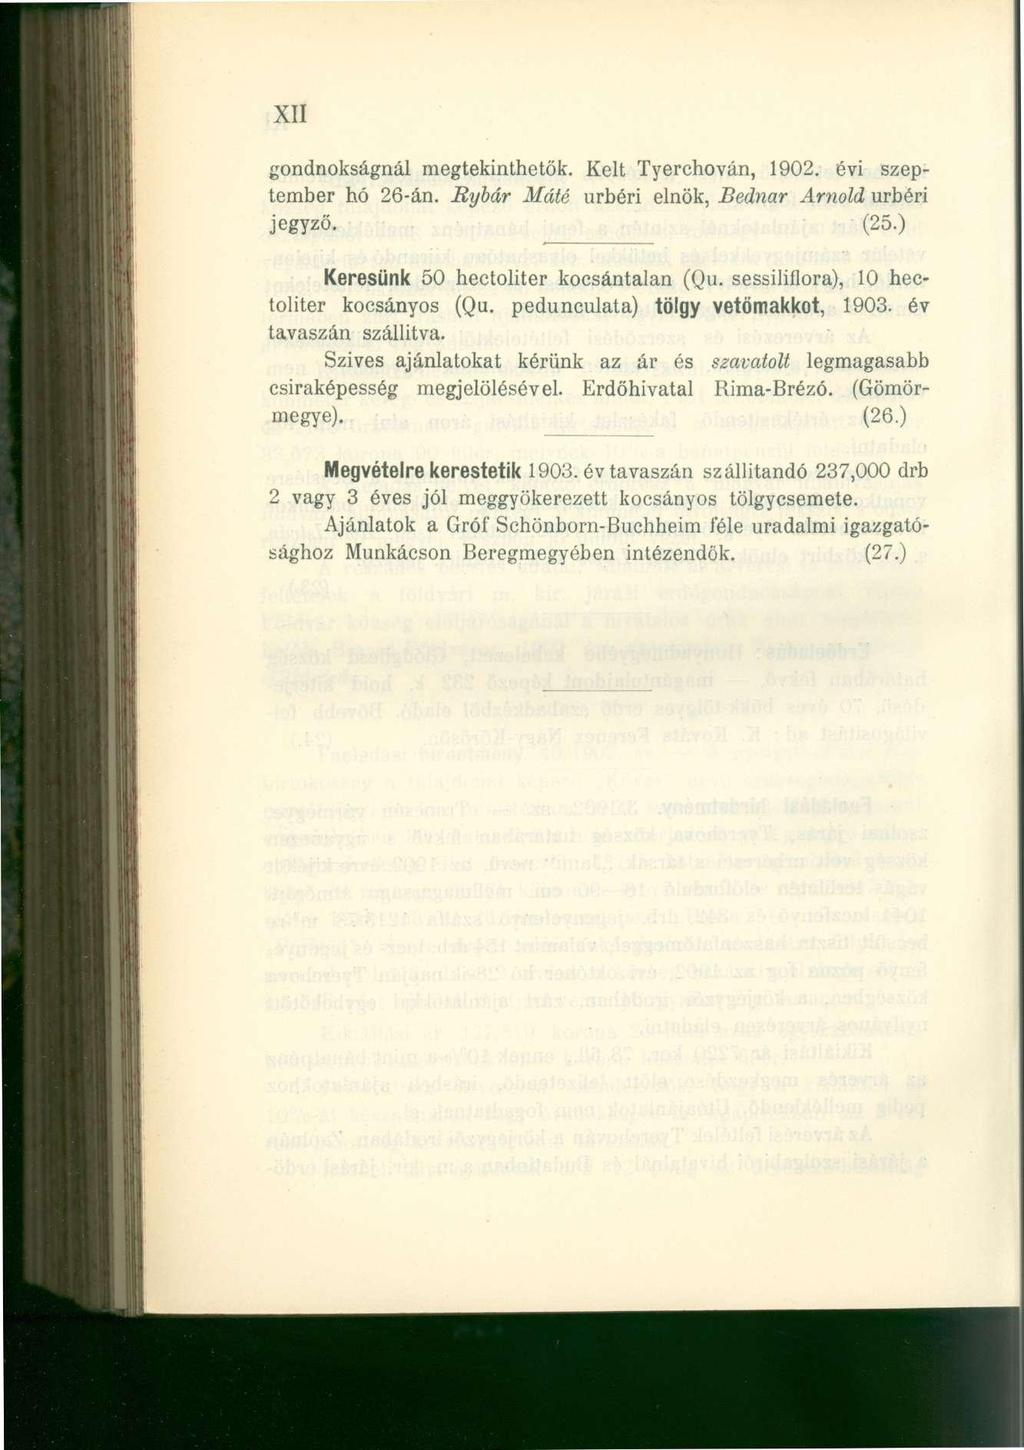 XII gondnokságnál megtekinthetők. Kelt Tyerchován, 1902. évi szeptember hó 26-án. Rybár Máté úrbéri elnök, Bednar Arnold úrbéri jegyző. (25.) Keresünk 50 hectoliter kocsántalan (Qu.